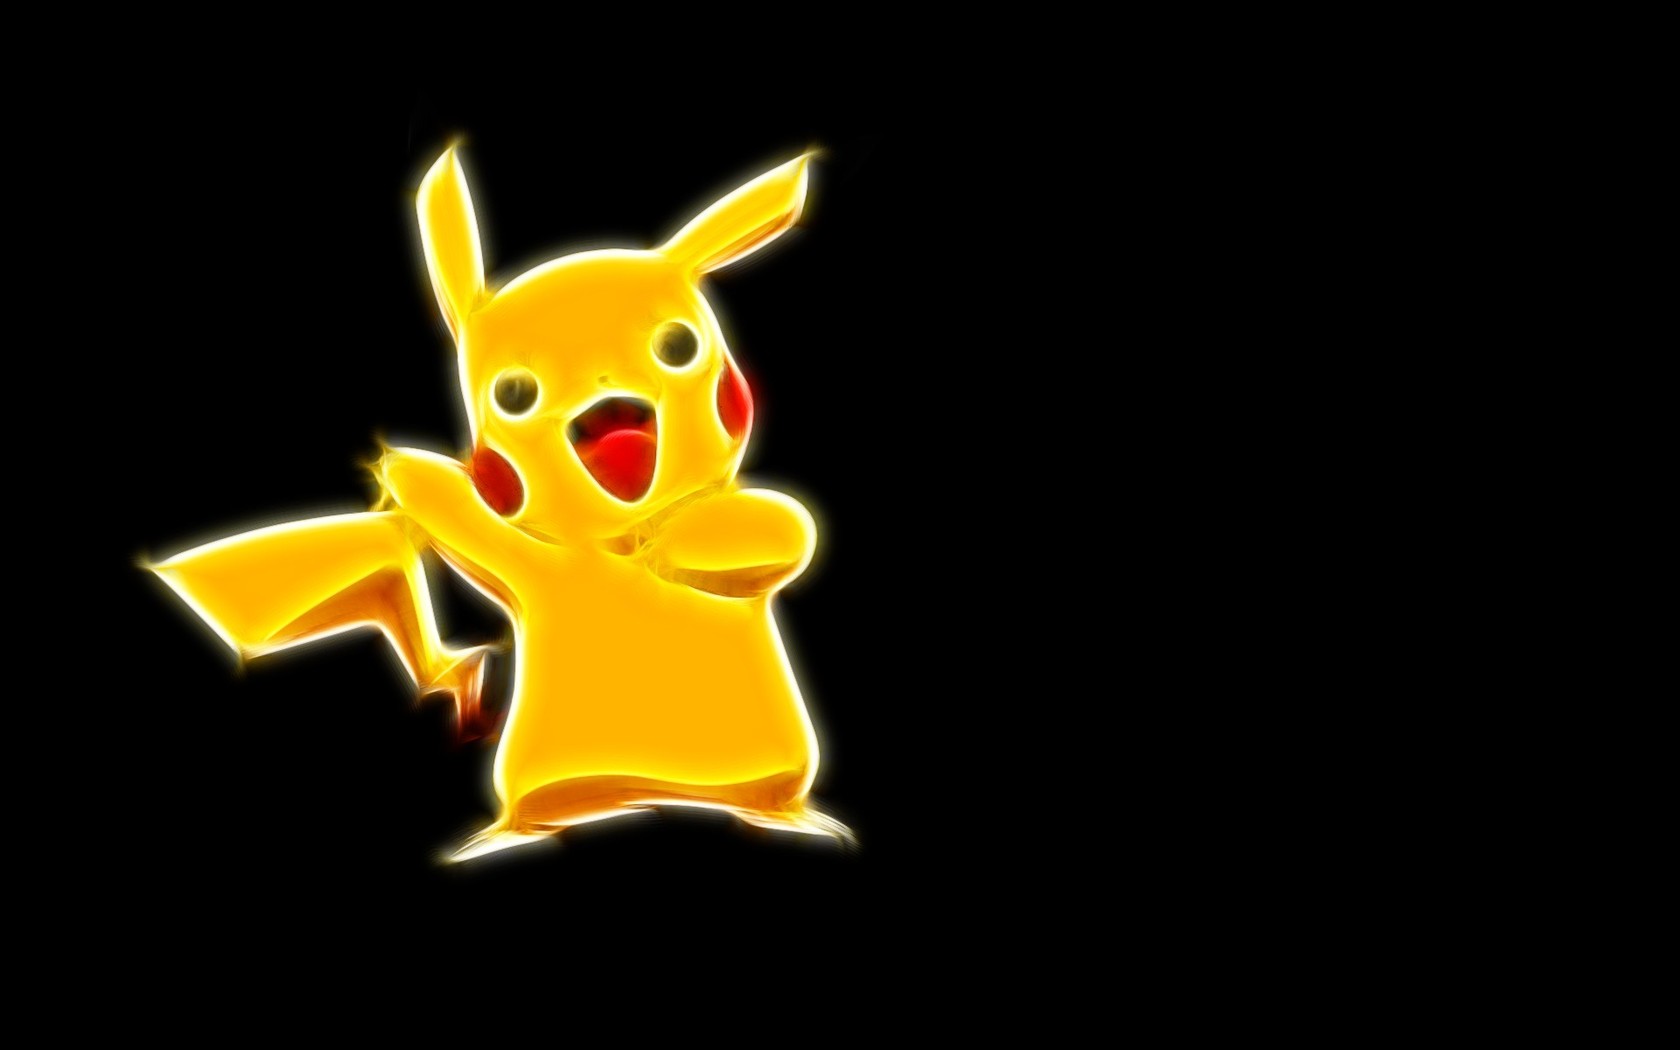 Pikachu Pokemon wallpaper